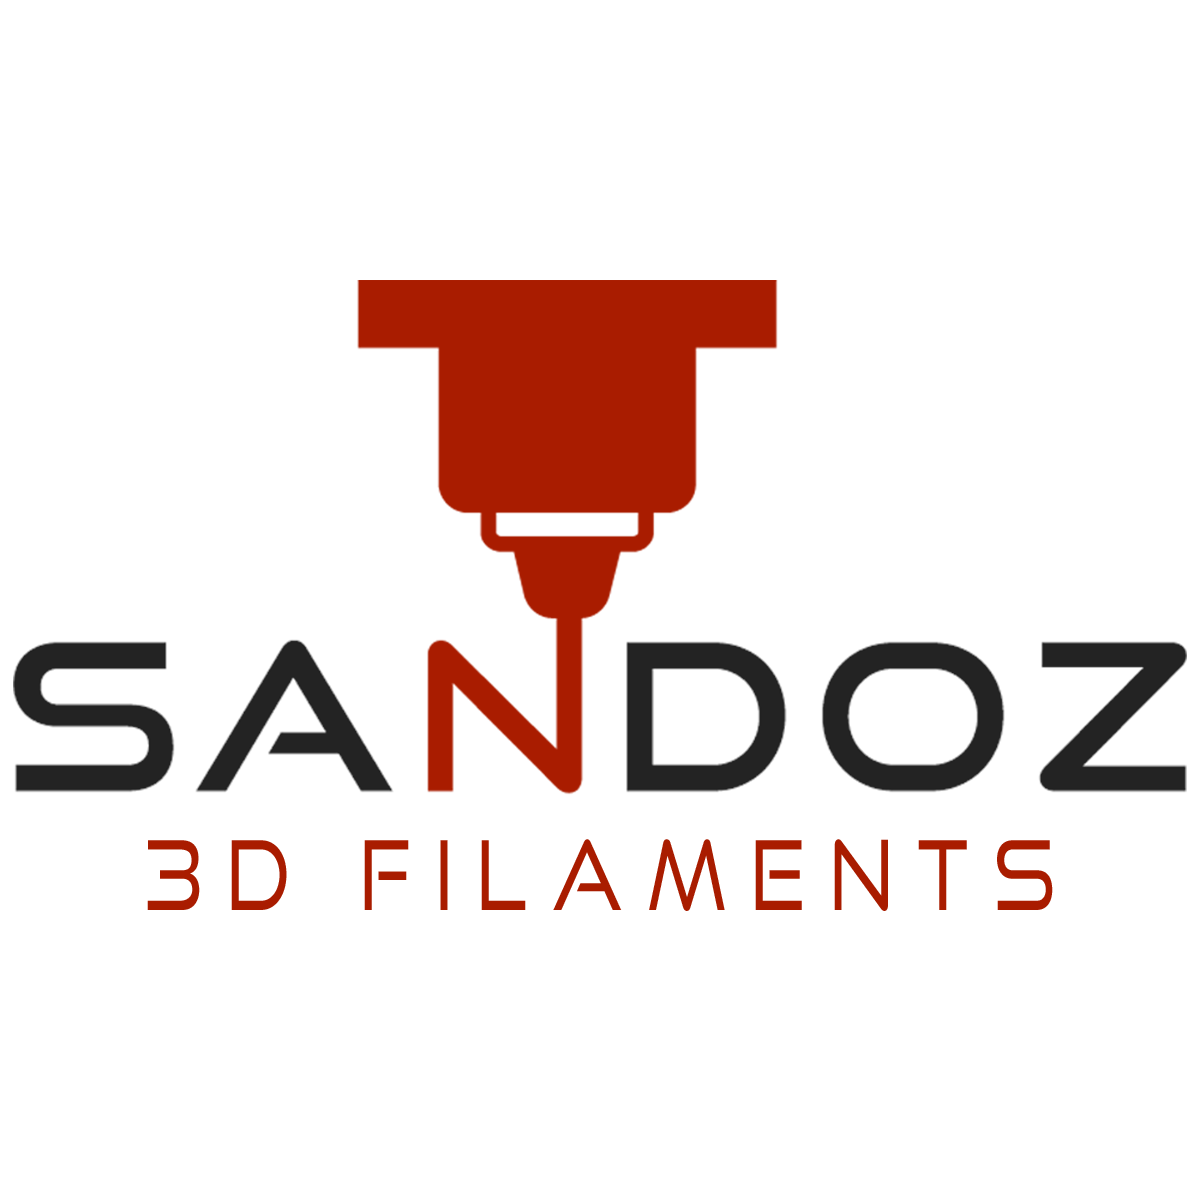 Sandoz 3D Filaments